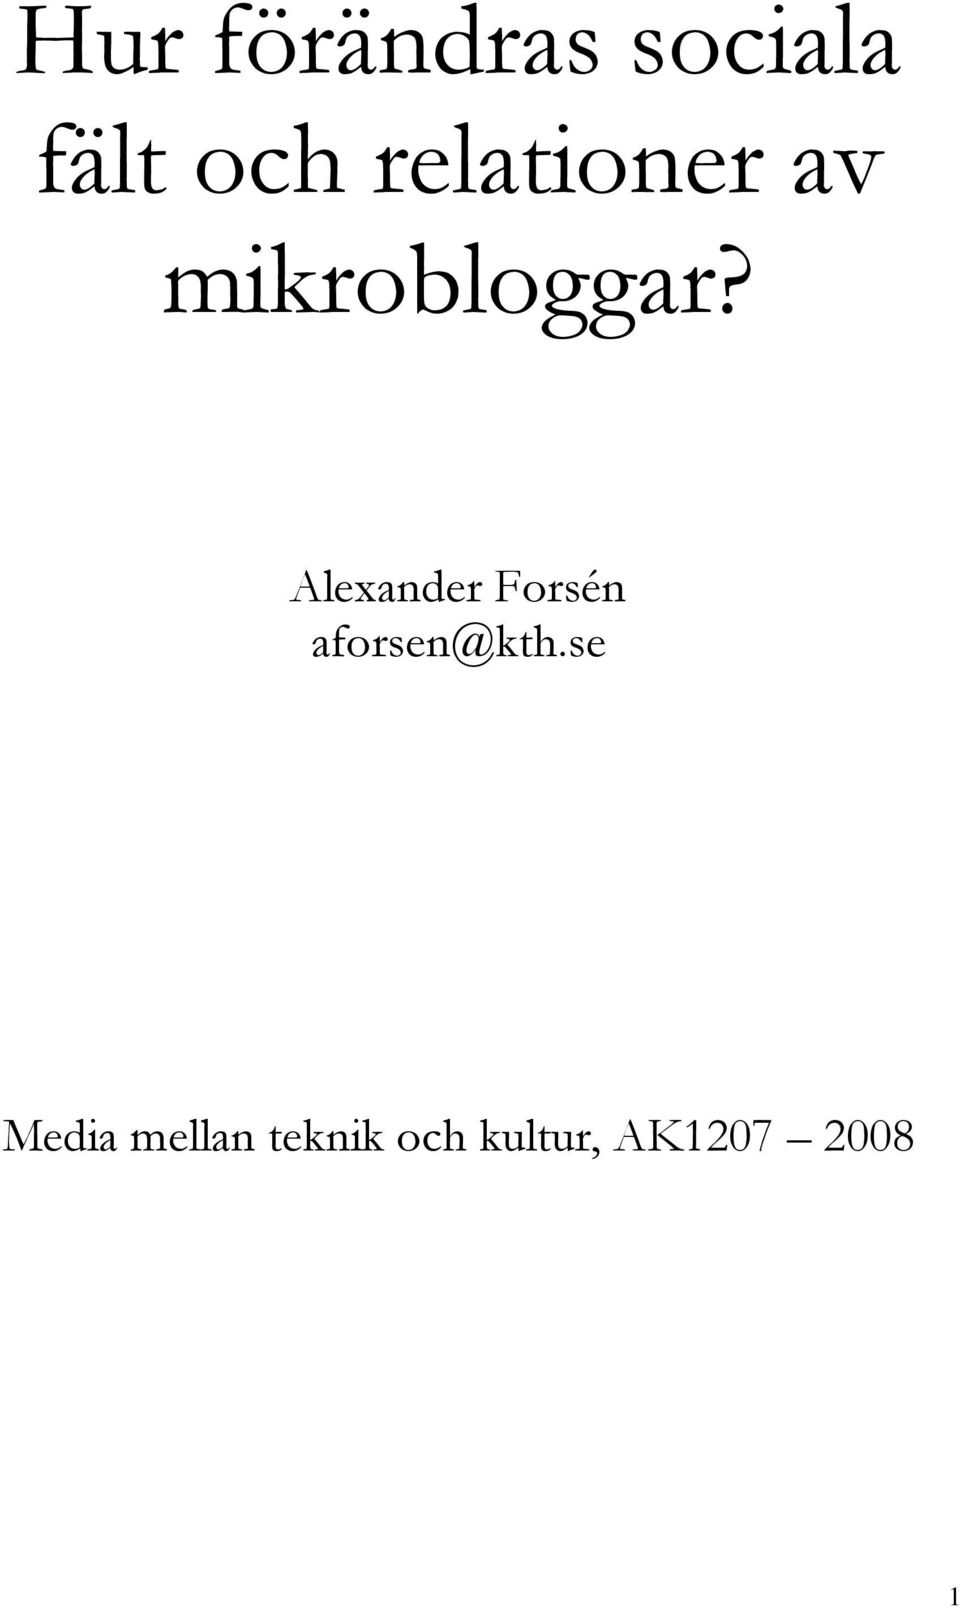 Alexander Forsén aforsen@kth.